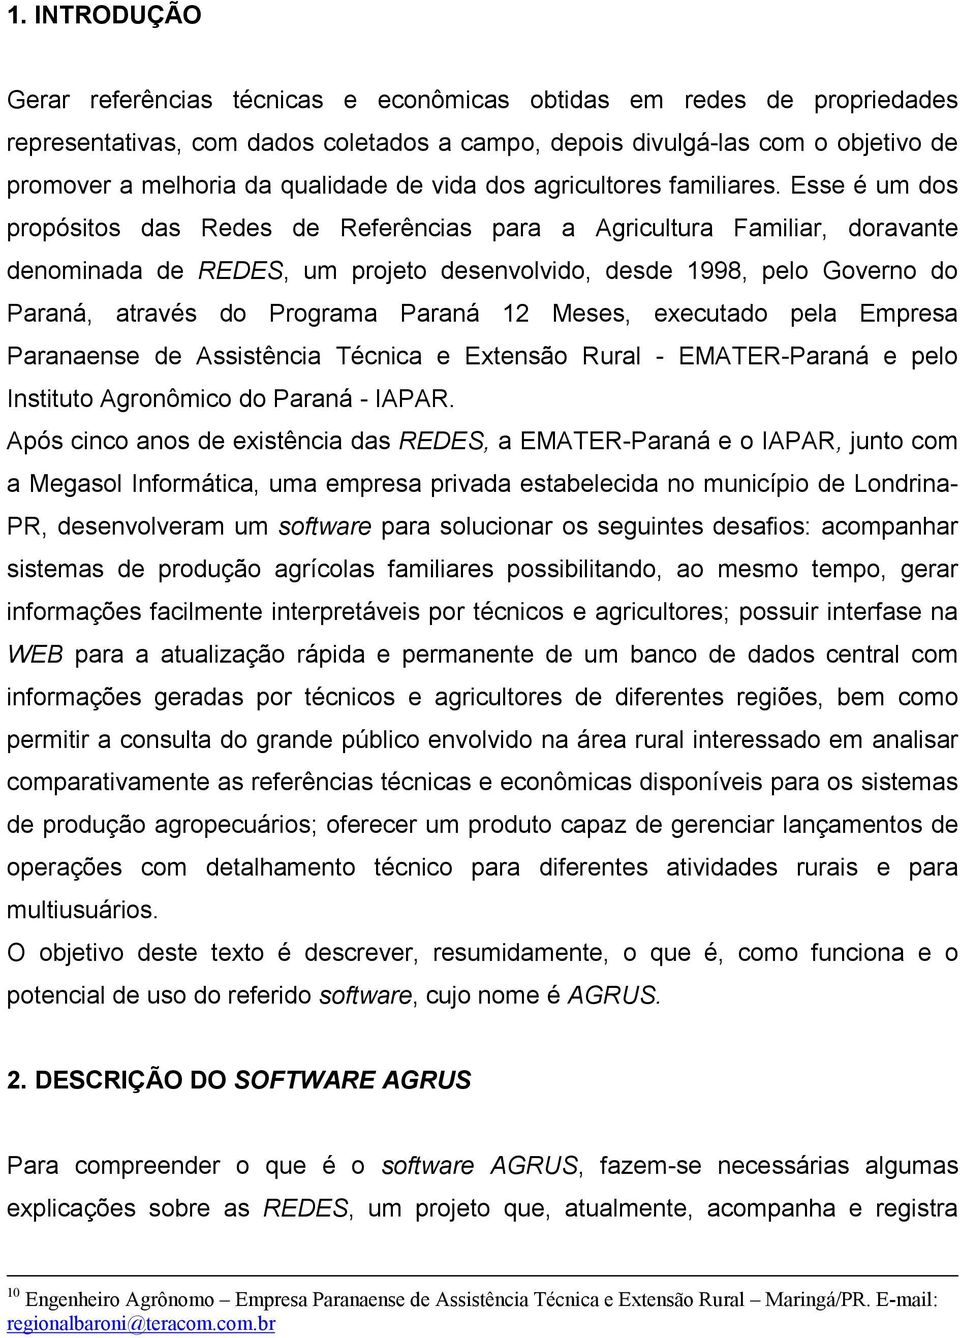 Esse é um dos propósitos das Redes de Referências para a Agricultura Familiar, doravante denominada de REDES, um projeto desenvolvido, desde 1998, pelo Governo do Paraná, através do Programa Paraná